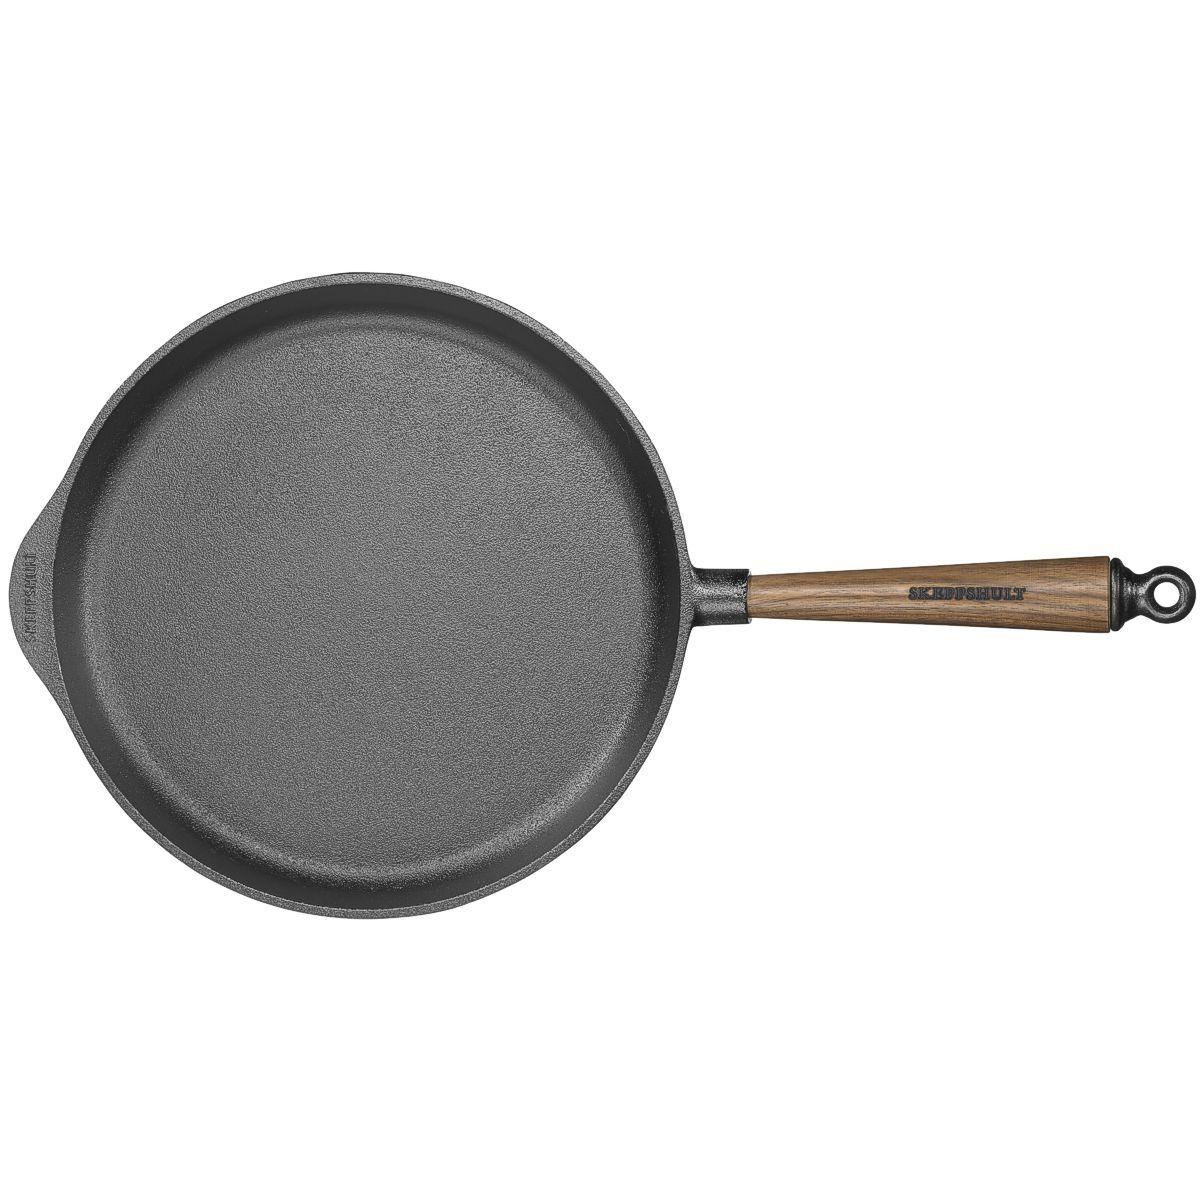 [Skeppshult] Deep Fry Pan, 25cm - HANKOOK